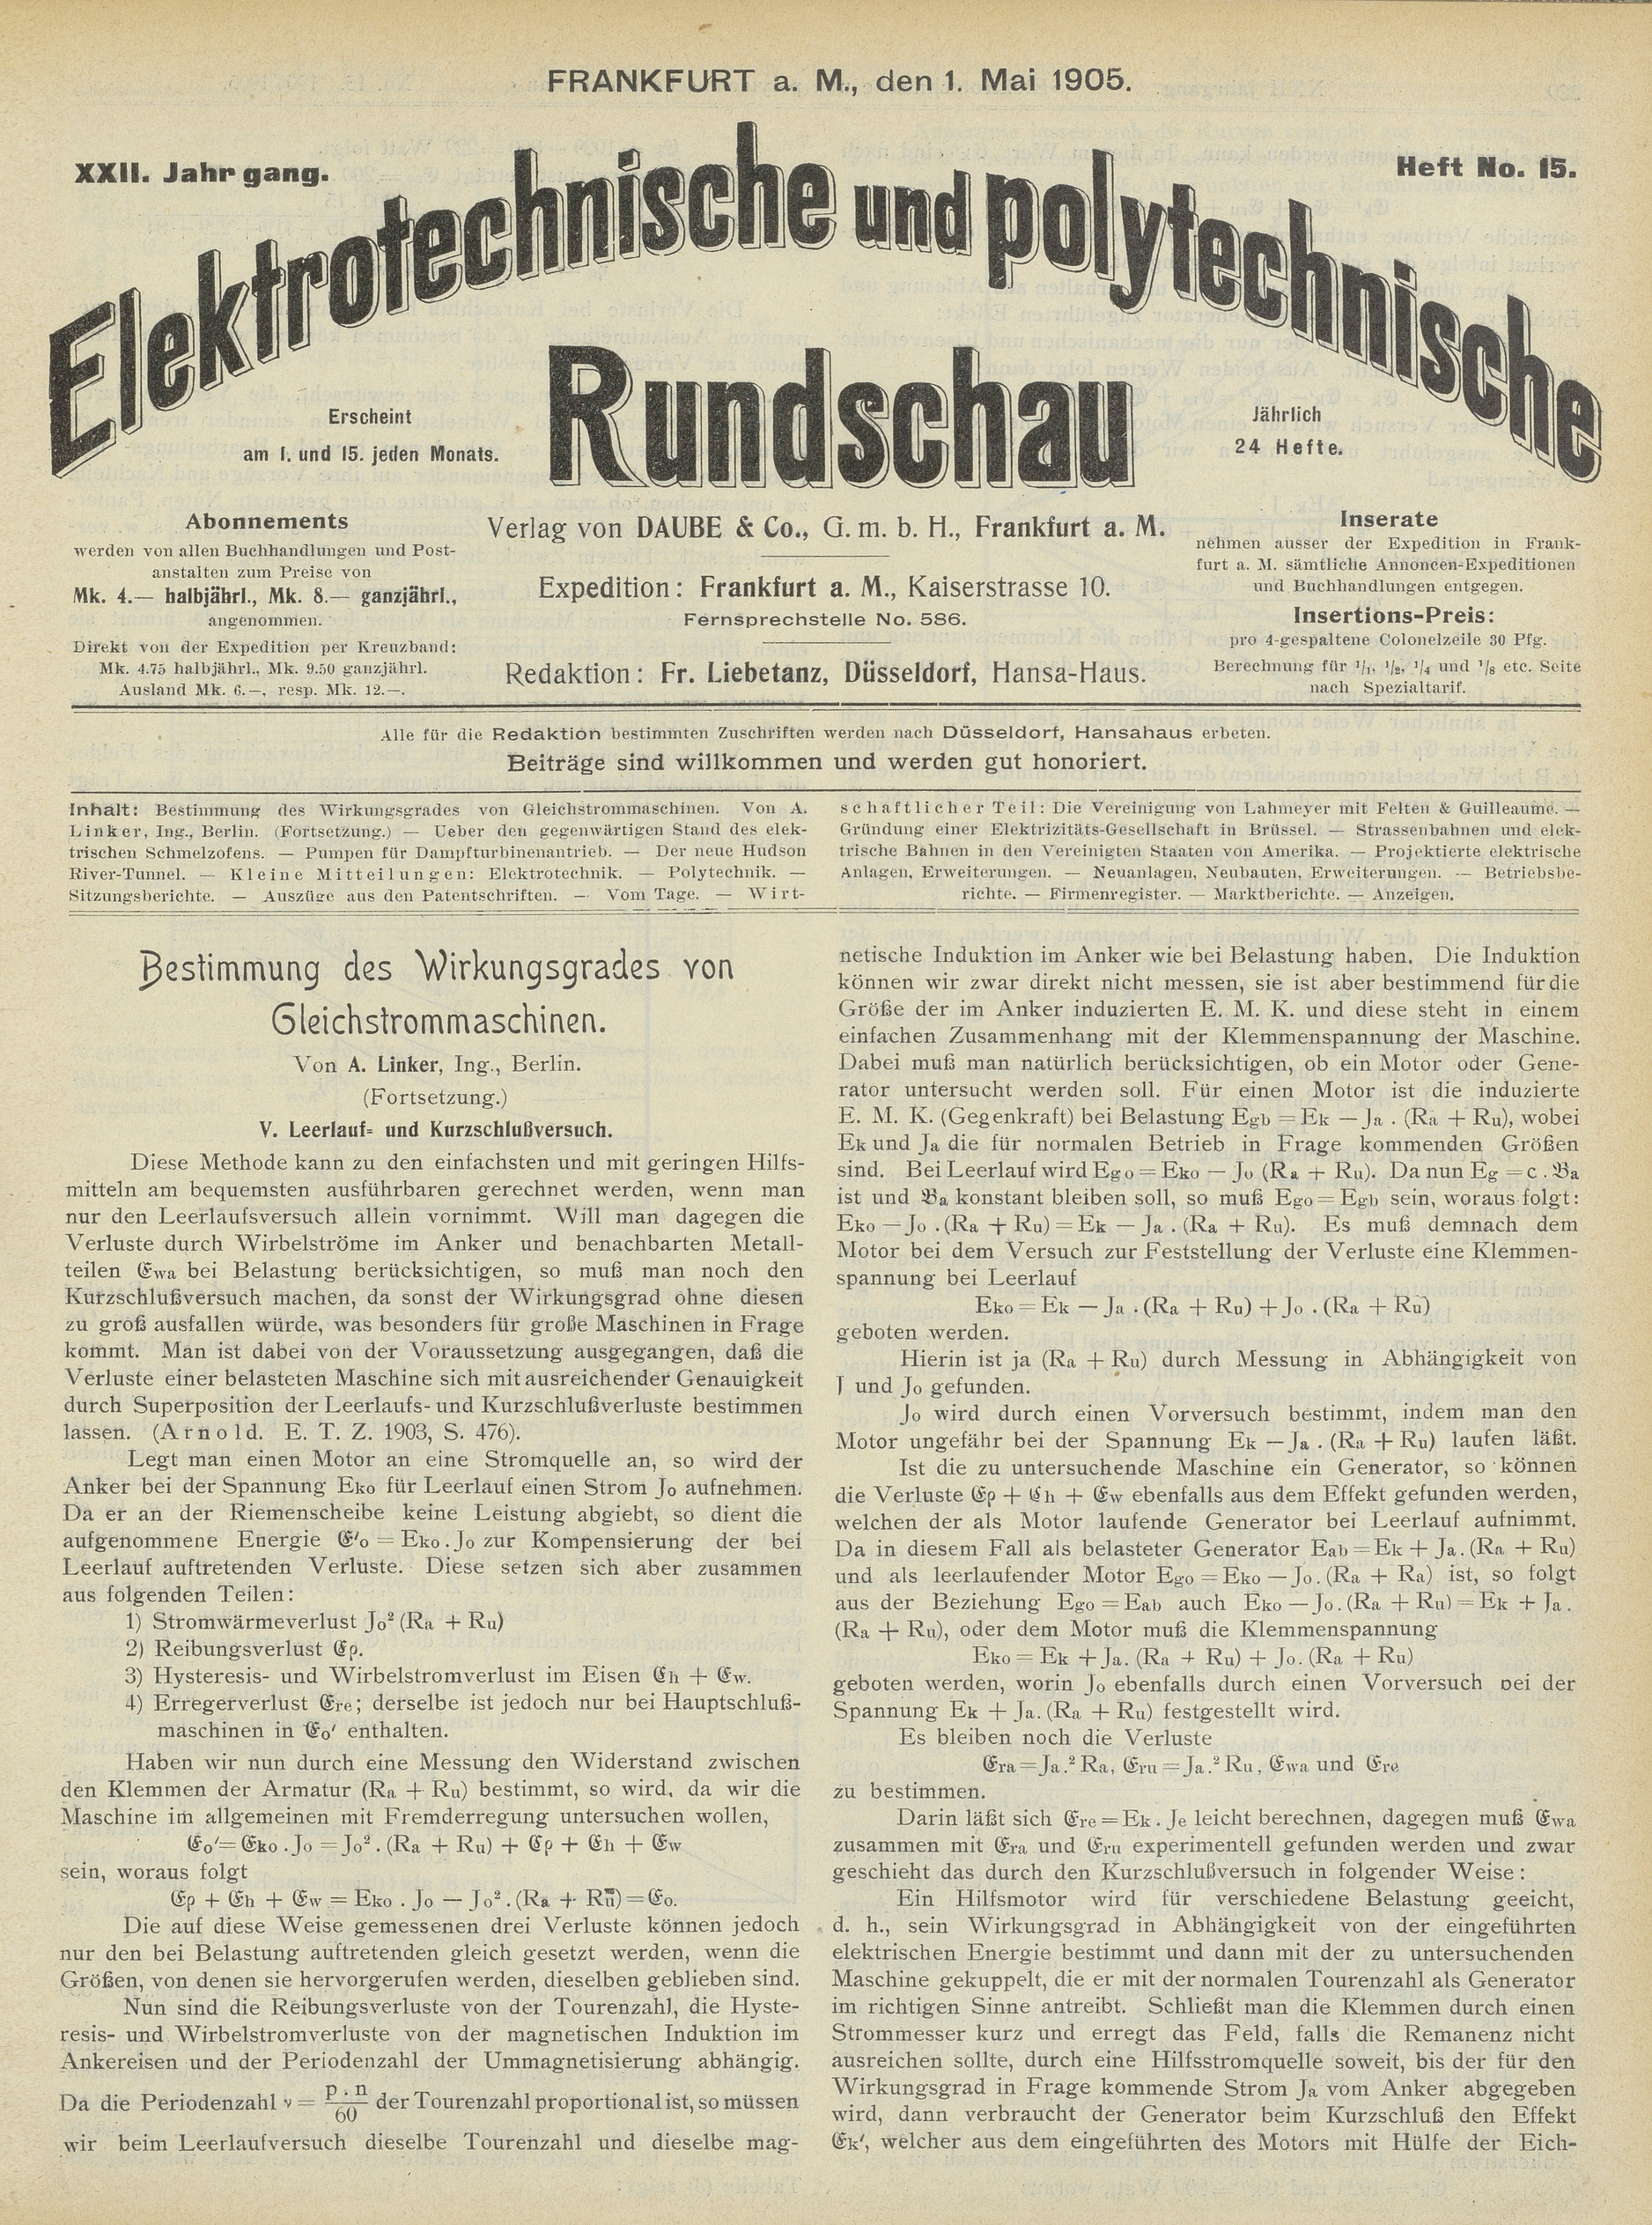 Elektrotechnische und polytechnische Rundschau, XXII. Jahrgang, Heft No. 15